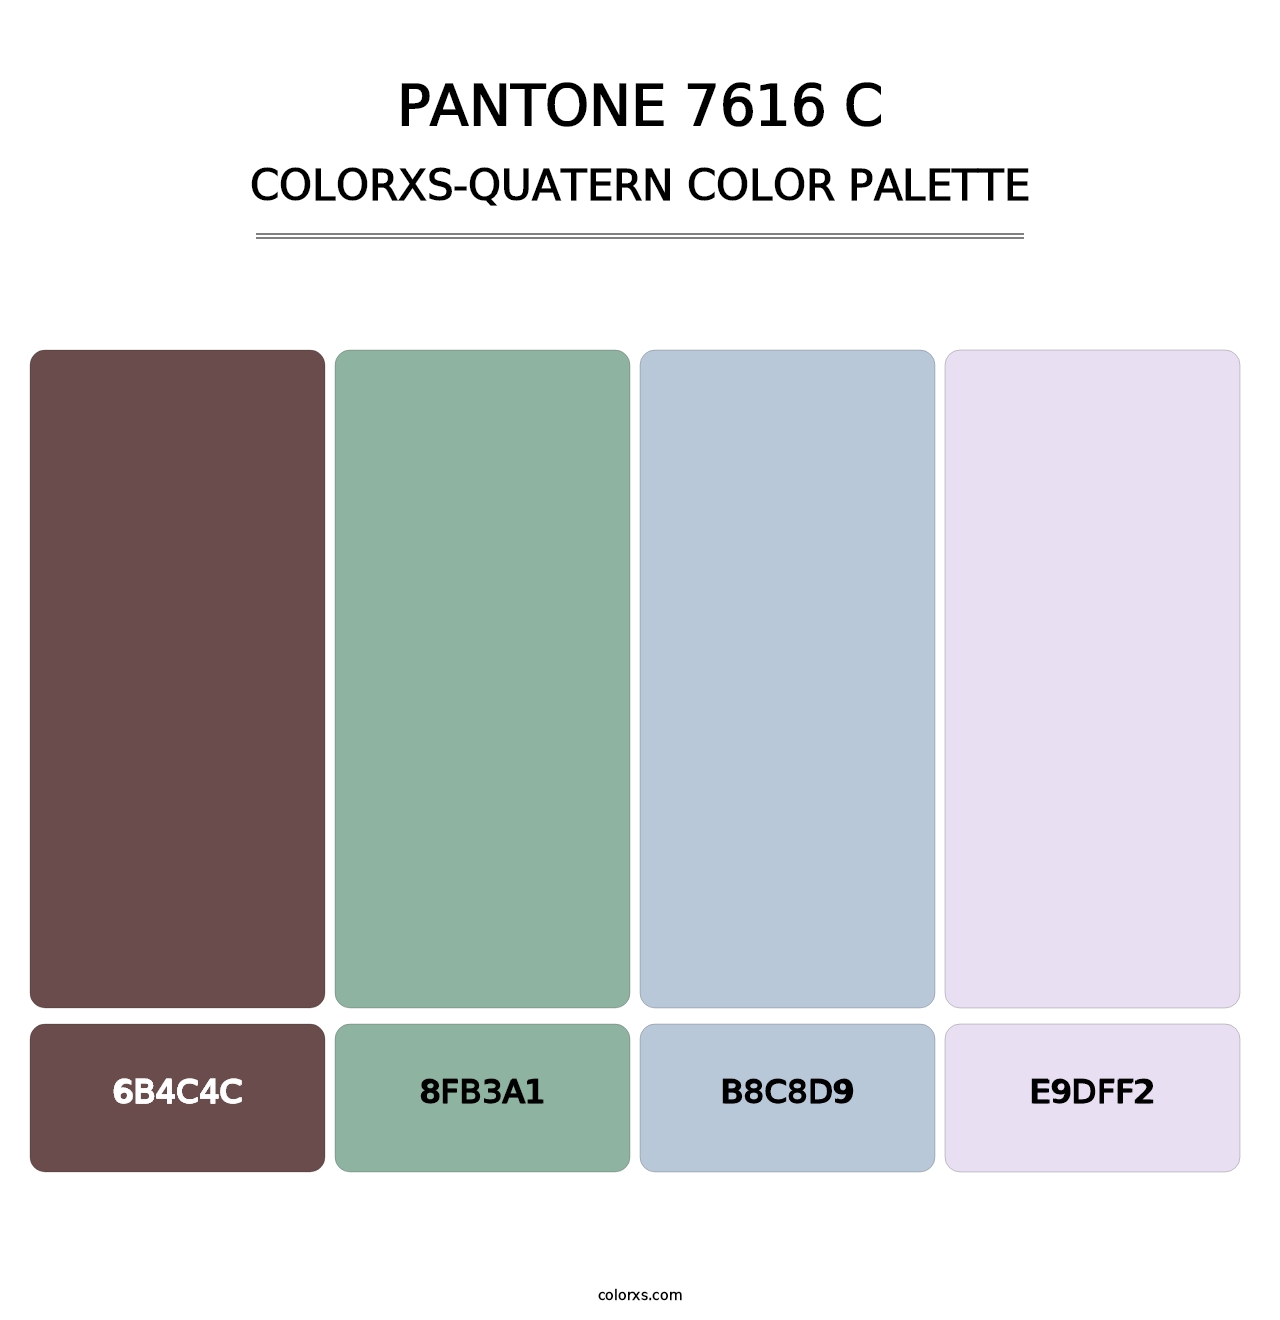 PANTONE 7616 C - Colorxs Quatern Palette